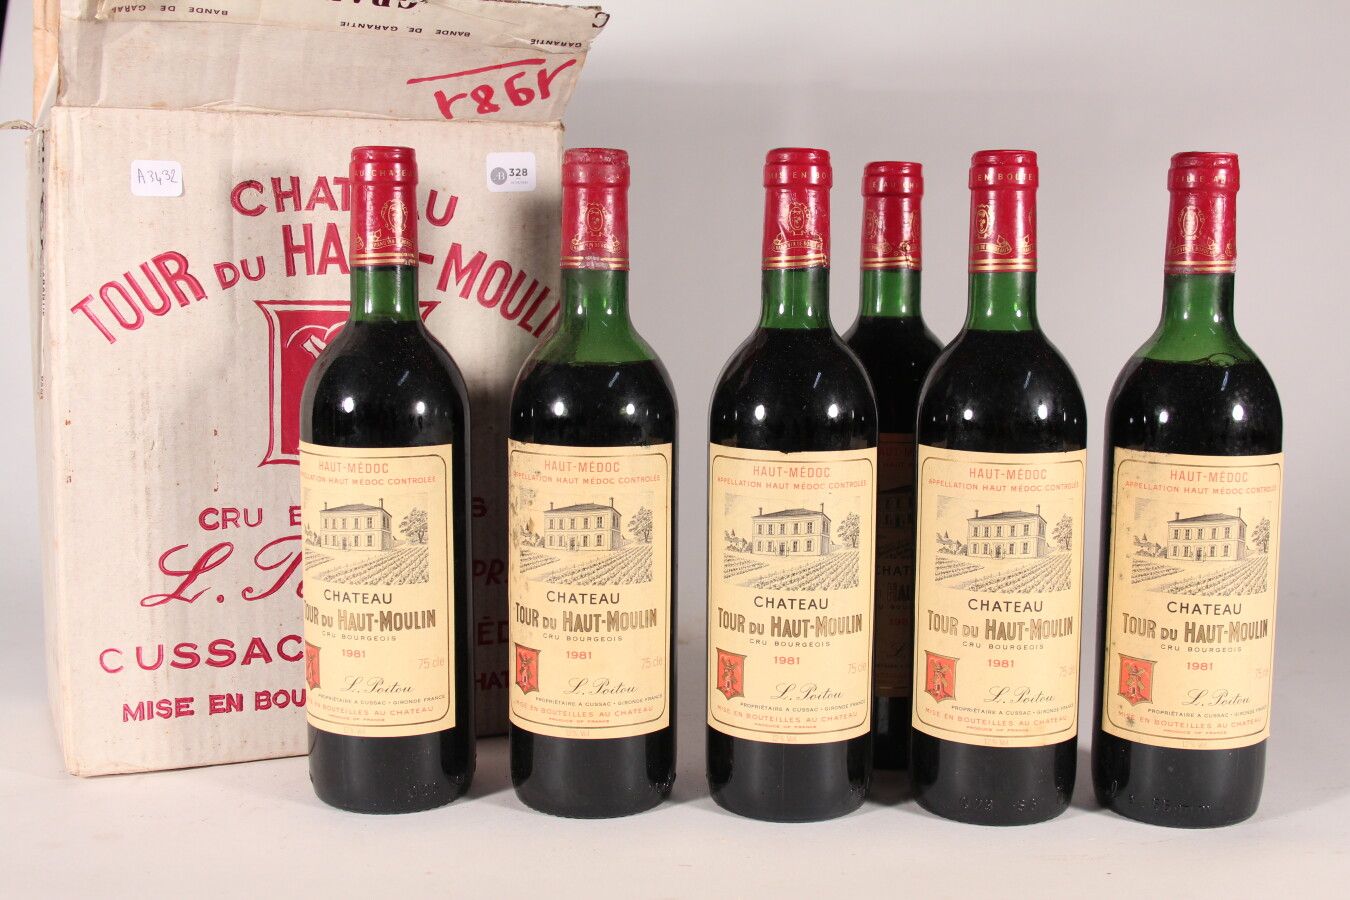 Null 1981 - Château La Tour du Haut Moulin

Haut Médoc - 6 botellas